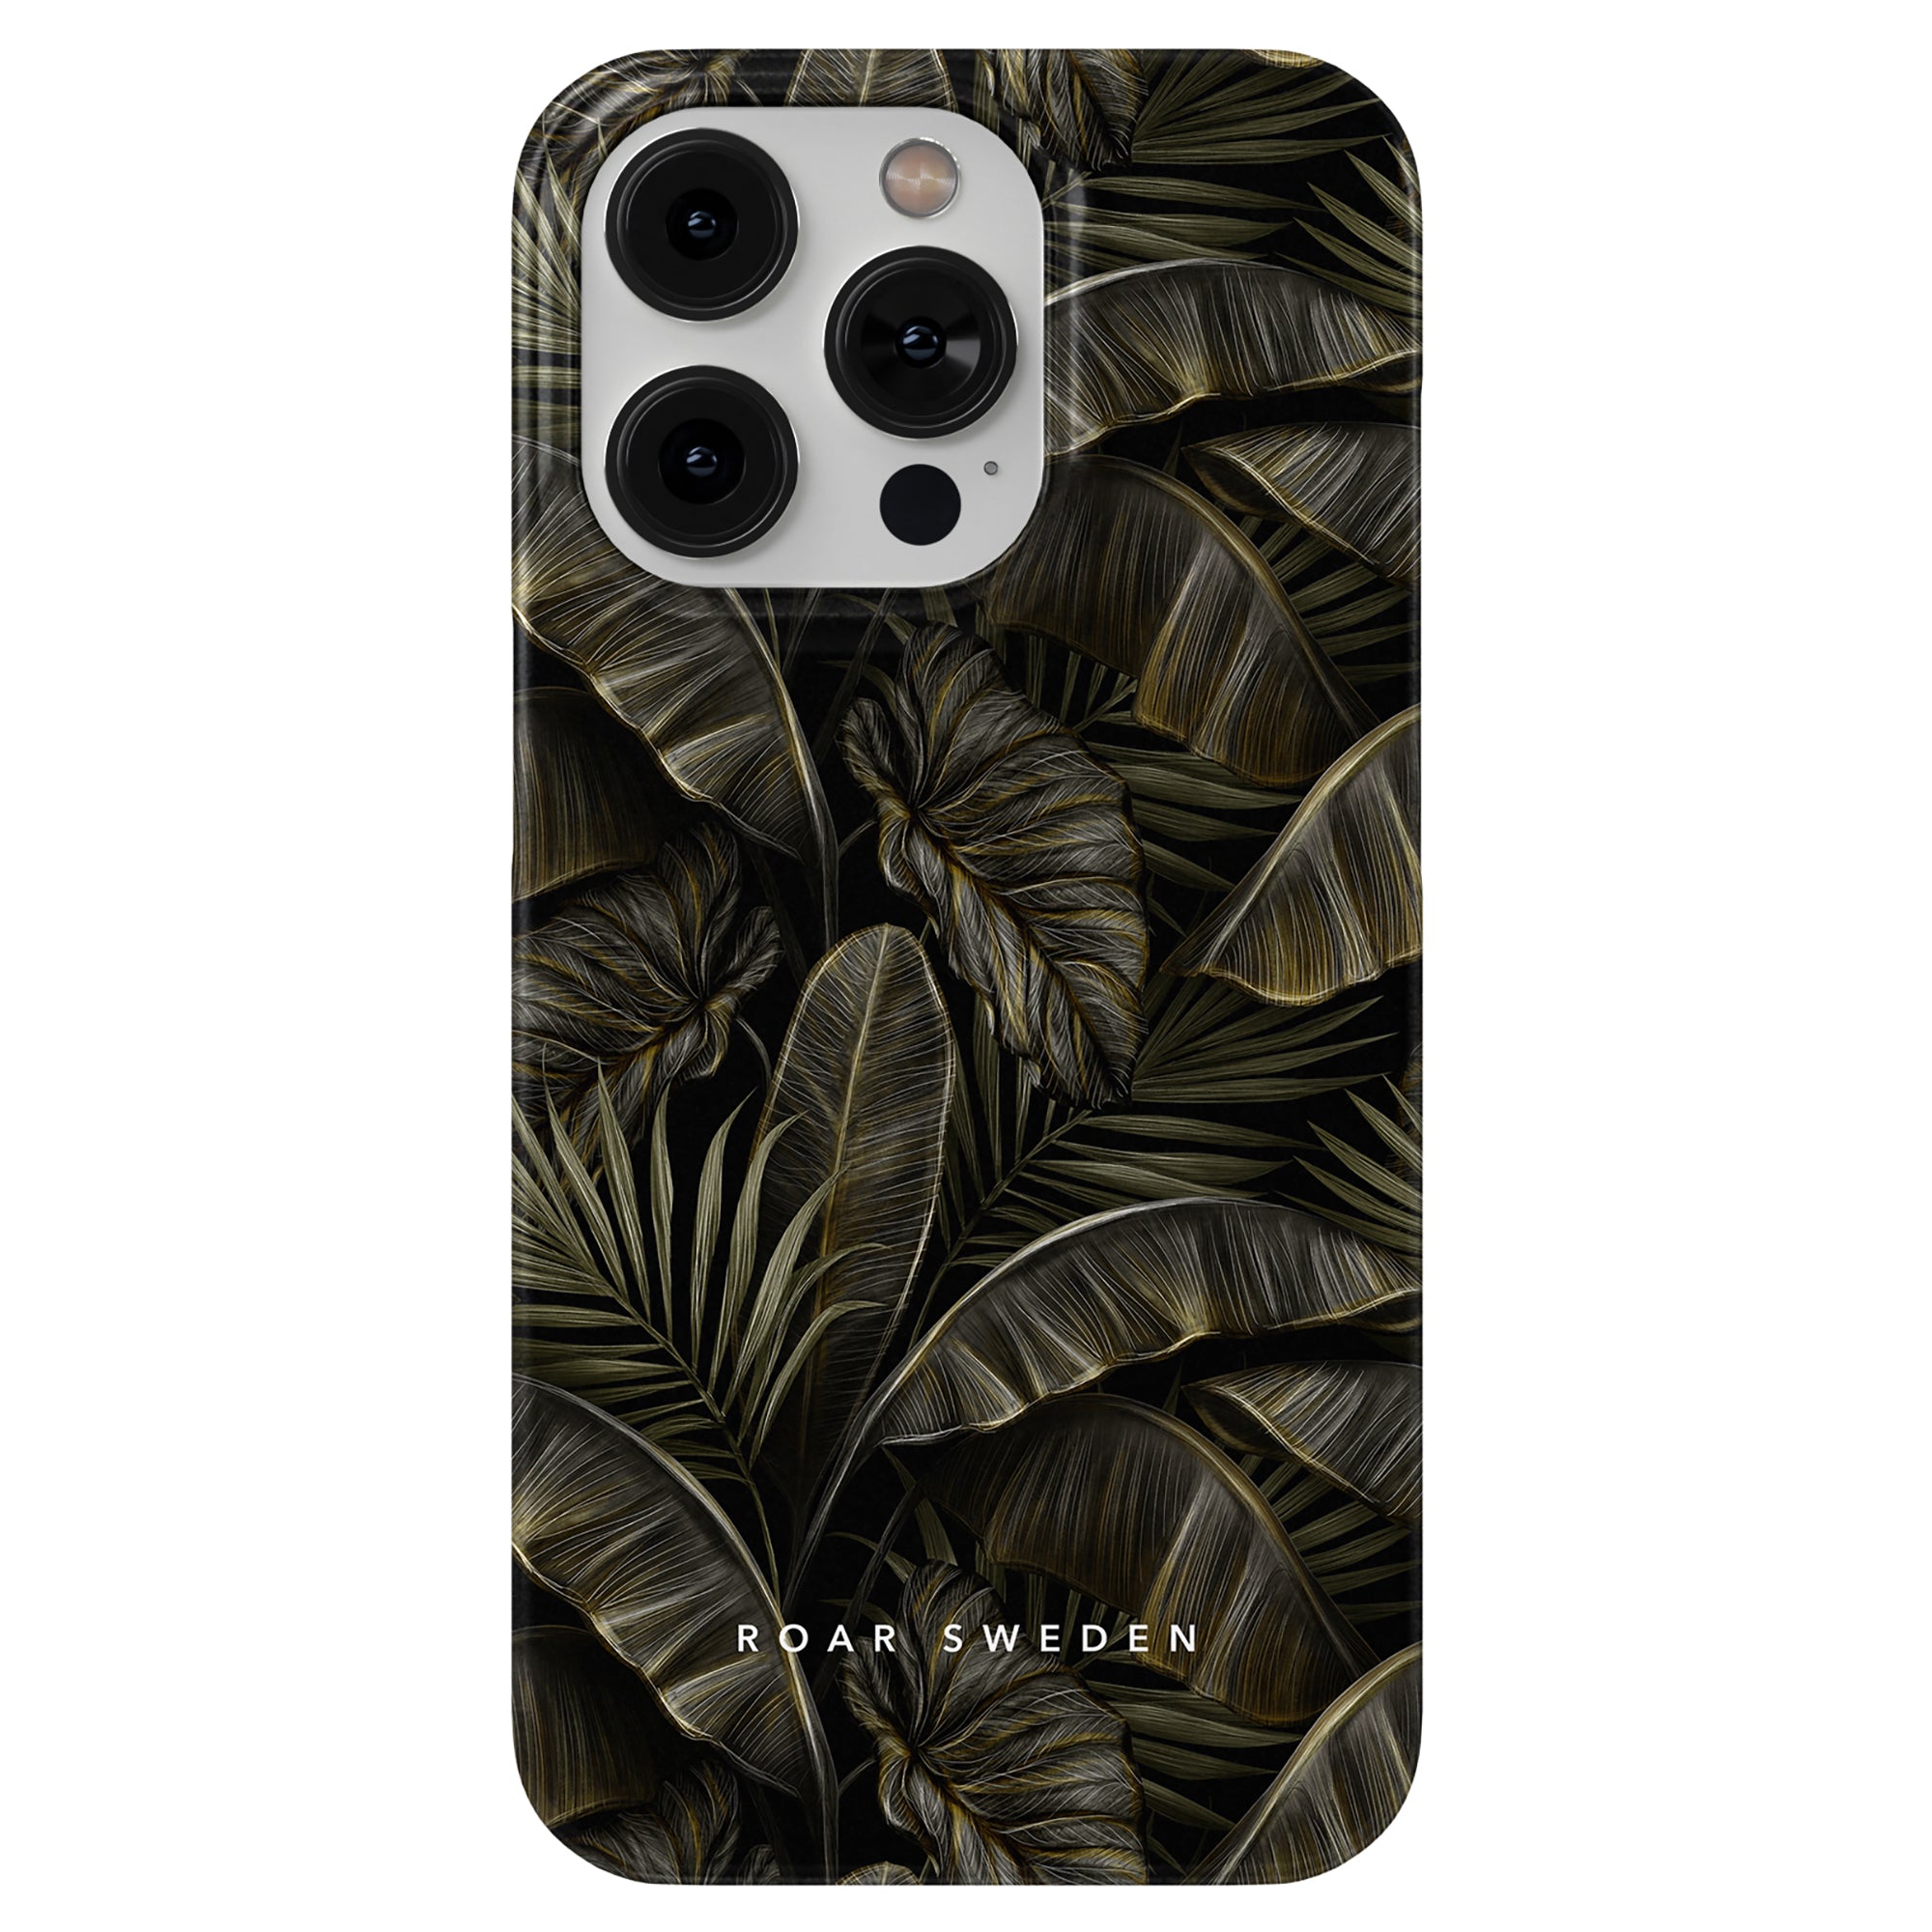 Ett svart och guld Colocasia - Tunt fodral med palmblad på, ger skydd för din telefon.